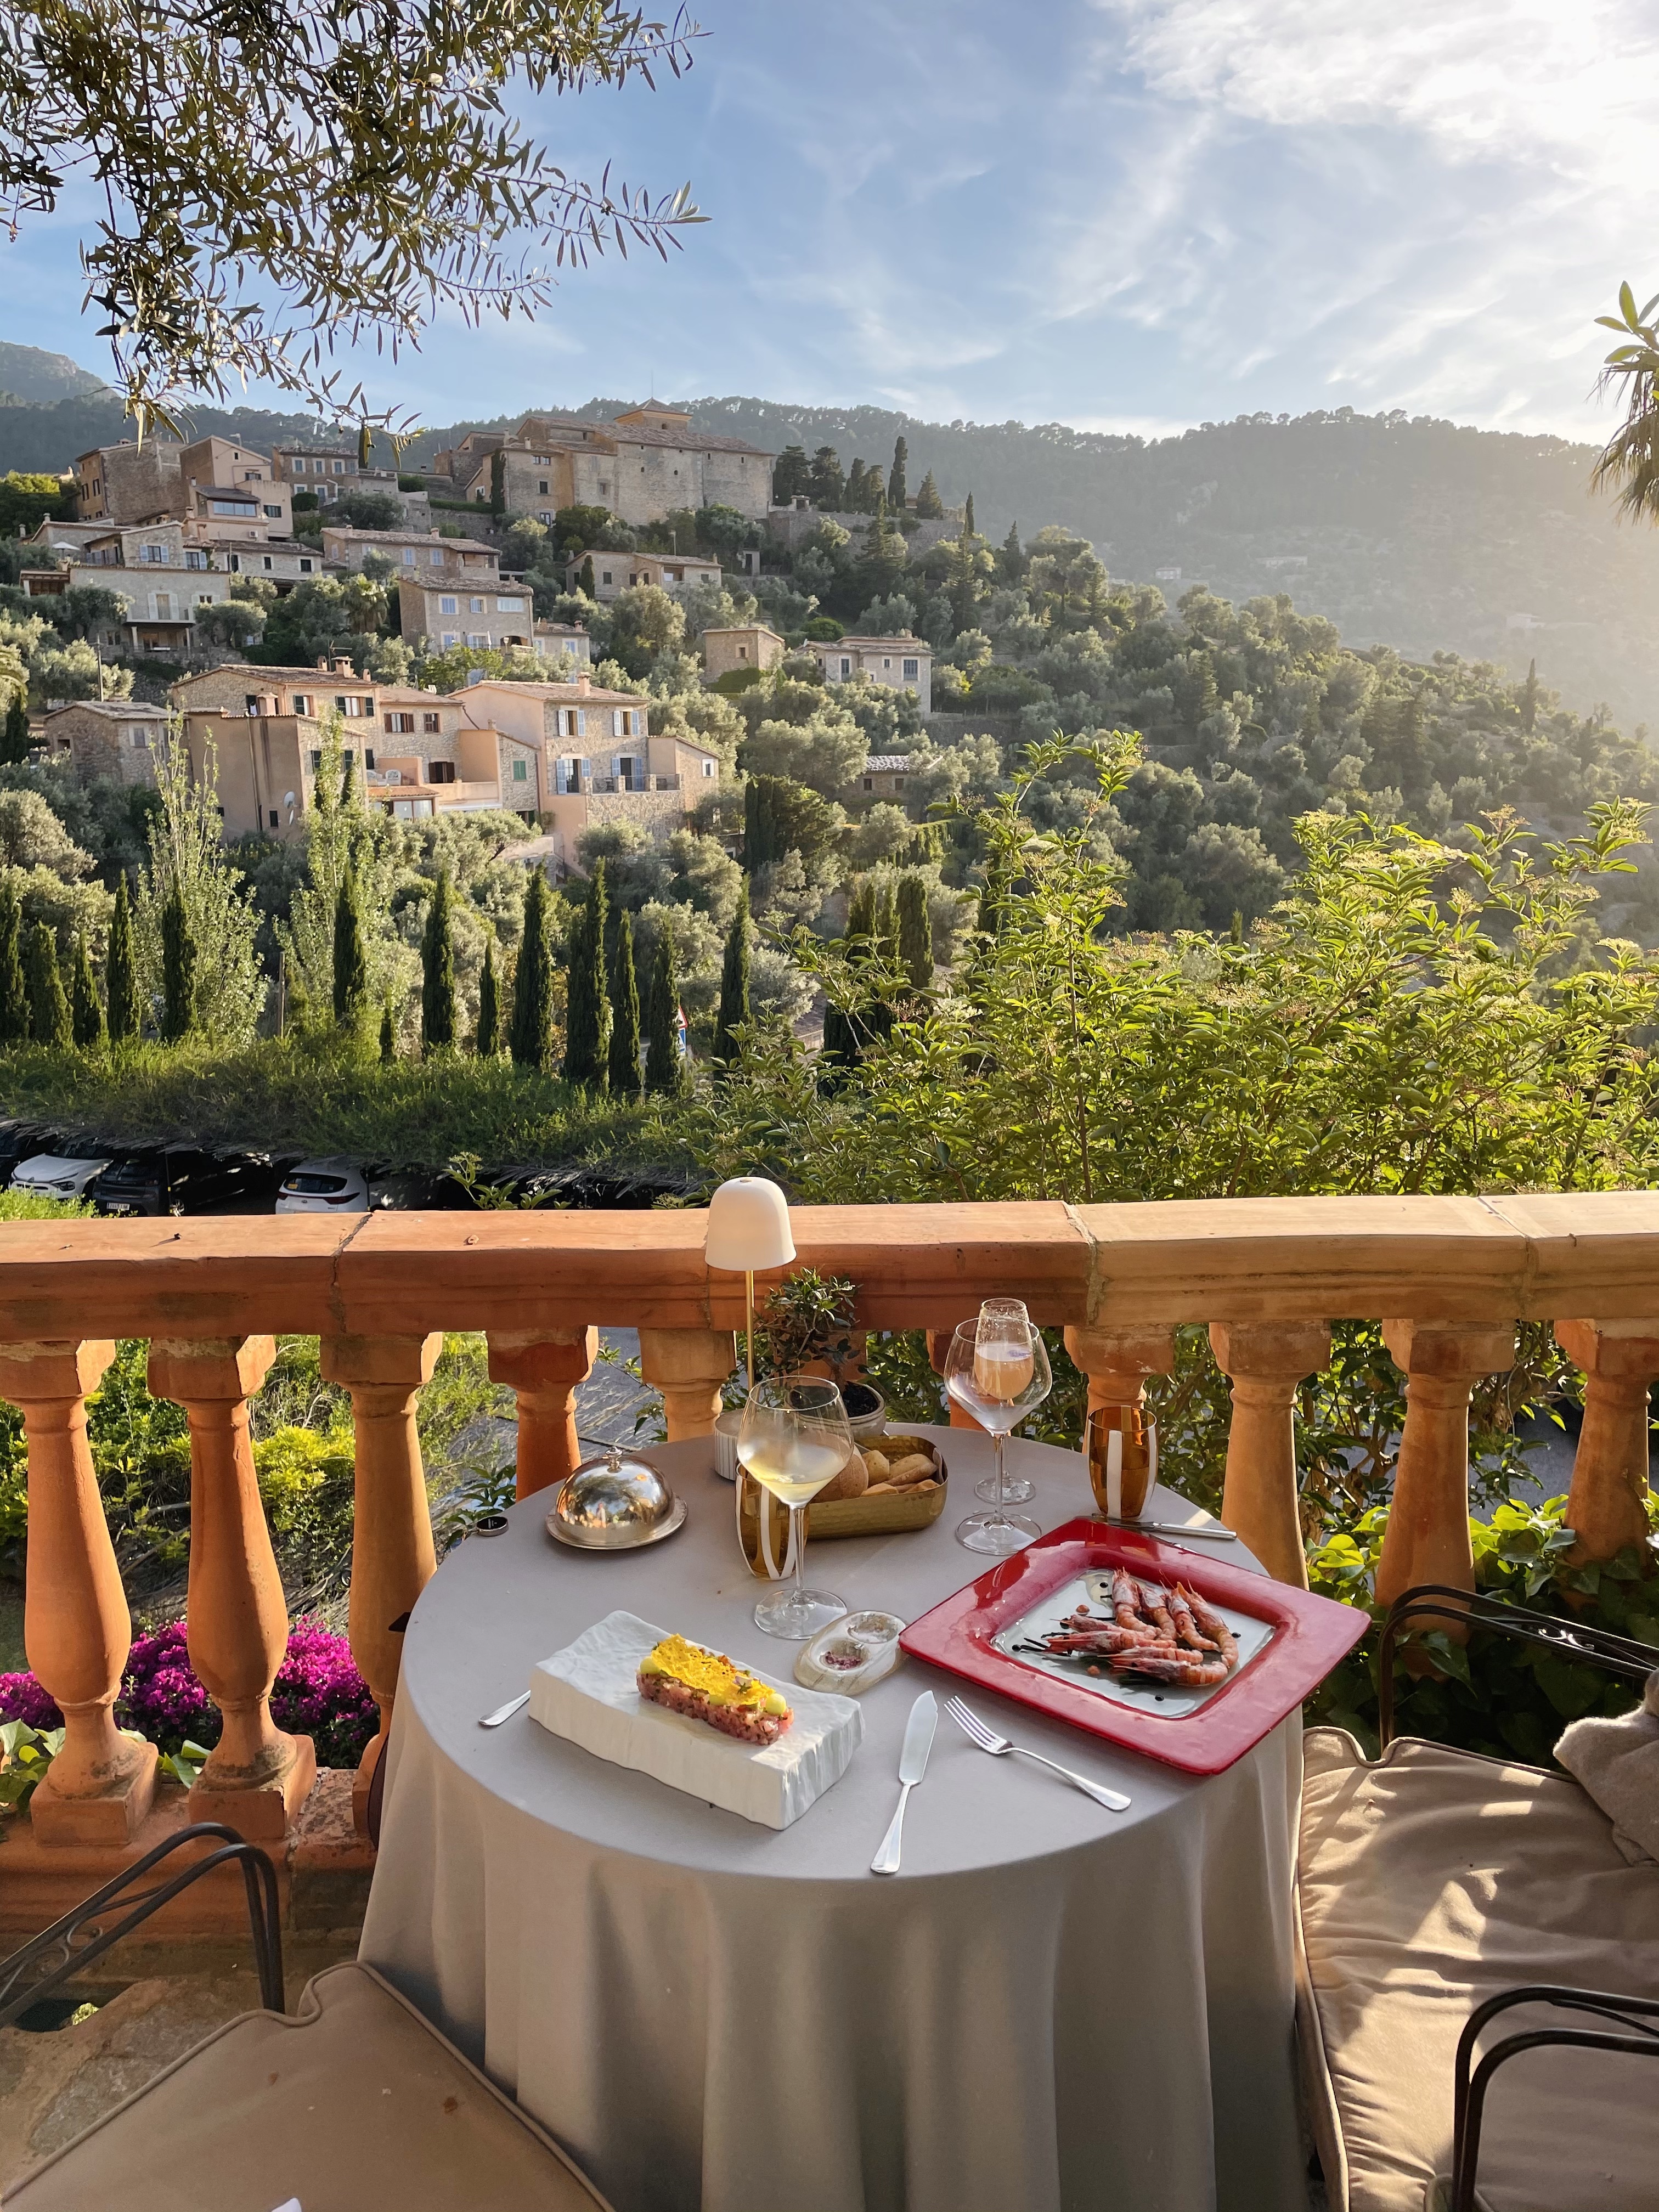 Lux Hotel Review: Belmond La Residencia, Mallorca